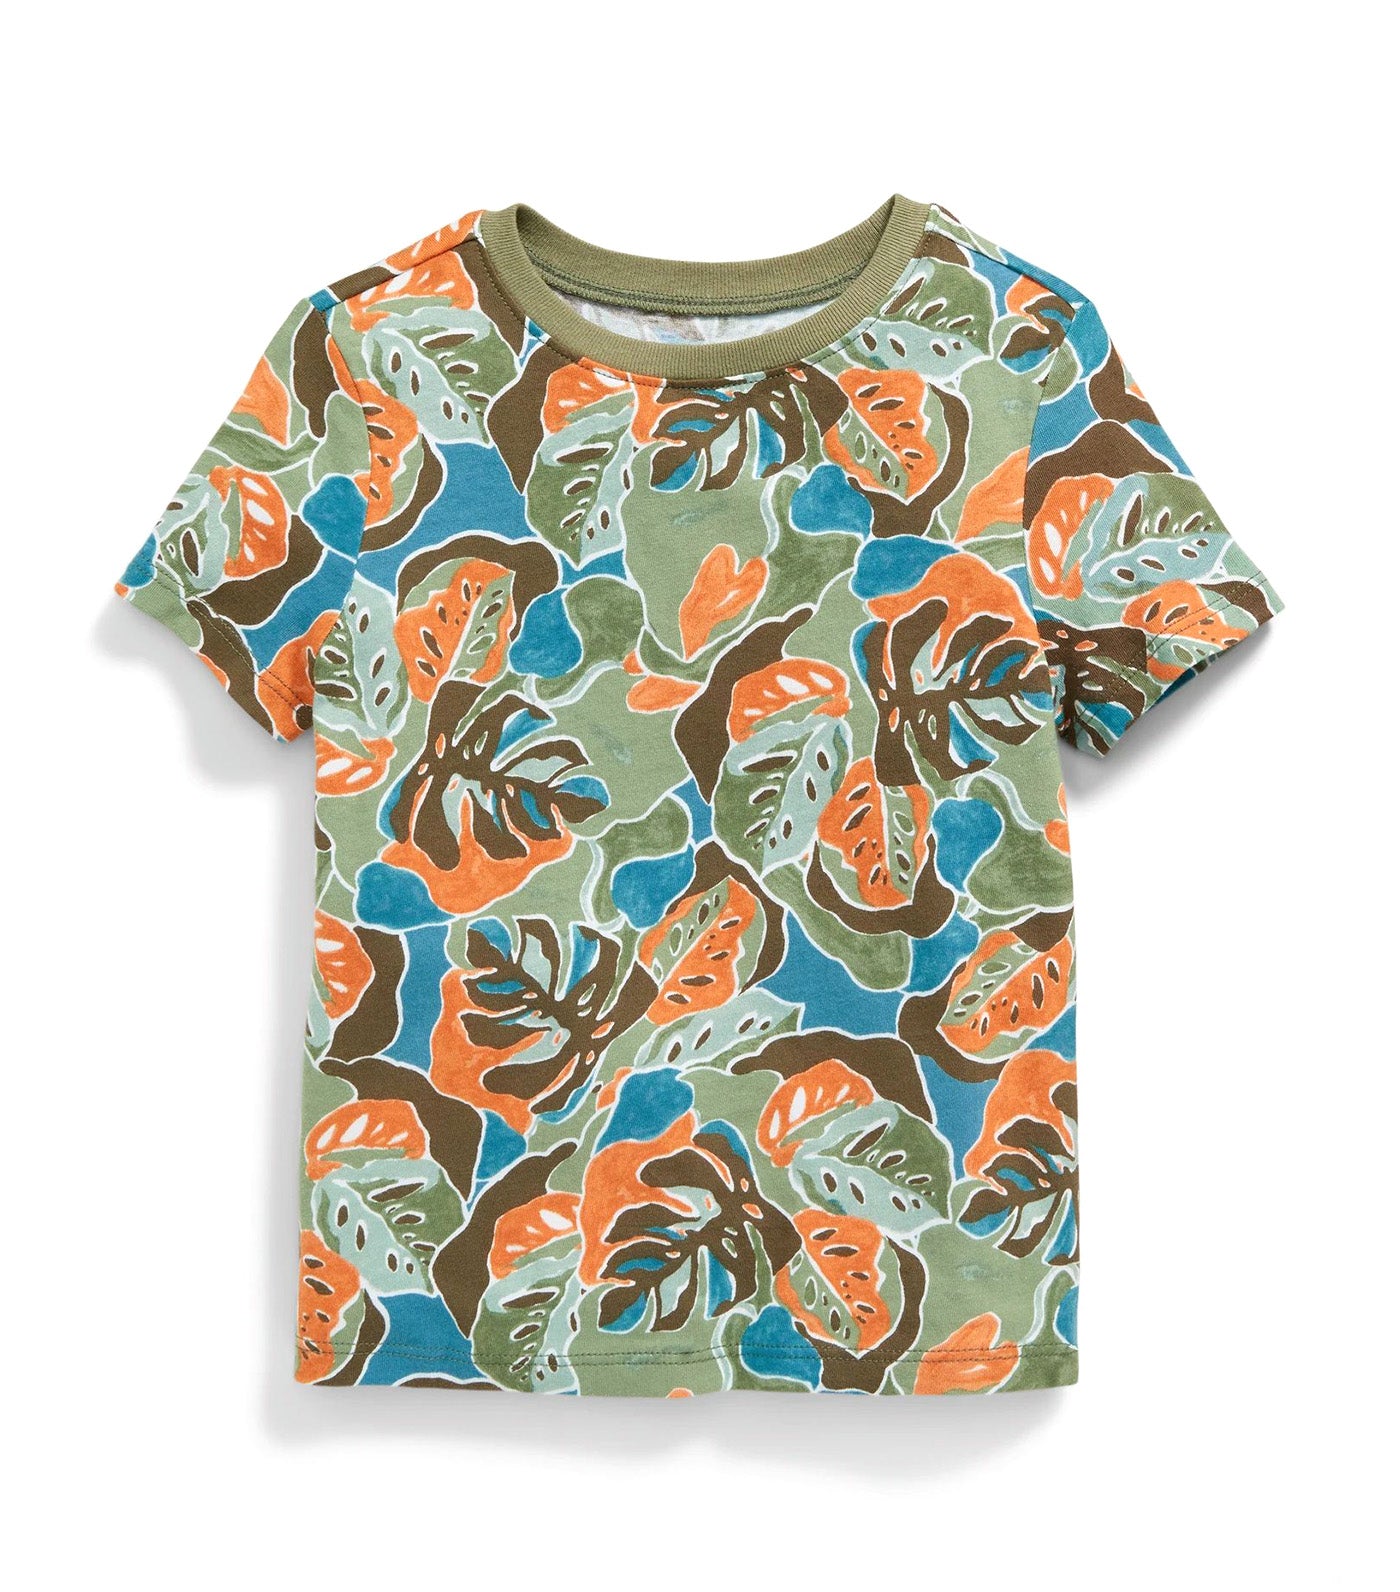 Unisex Printed Short-Sleeve T-Shirt for Toddler Leaves